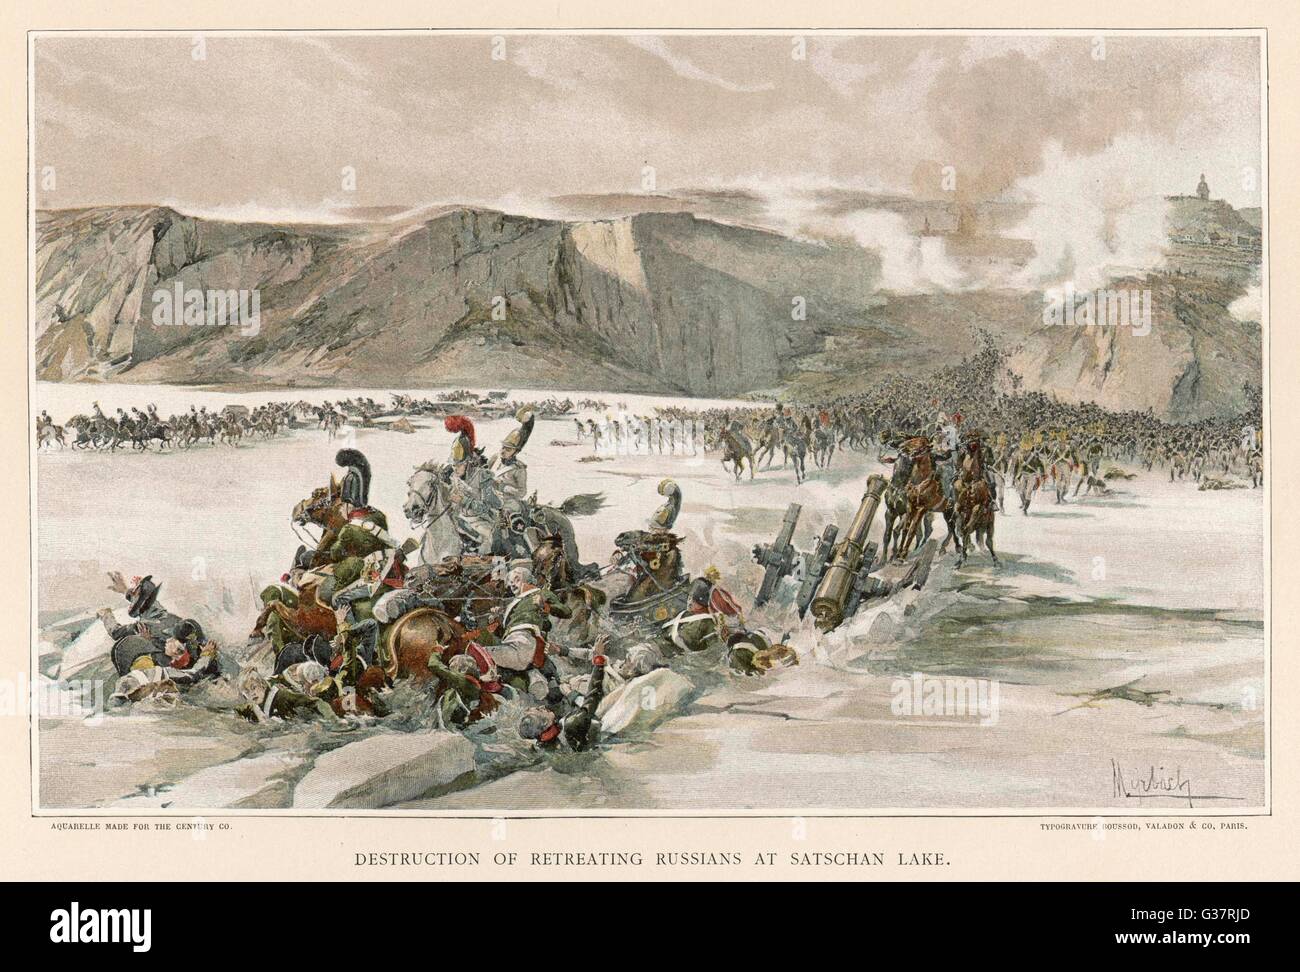 Schlacht von AUSTERLITZ Russen Rückzug über den gefrorenen See Satschan aber Napoleons Kanonen zerbrechen das Eis und 4000 ertrunken Datum: 2. Dezember 1805 Stockfoto